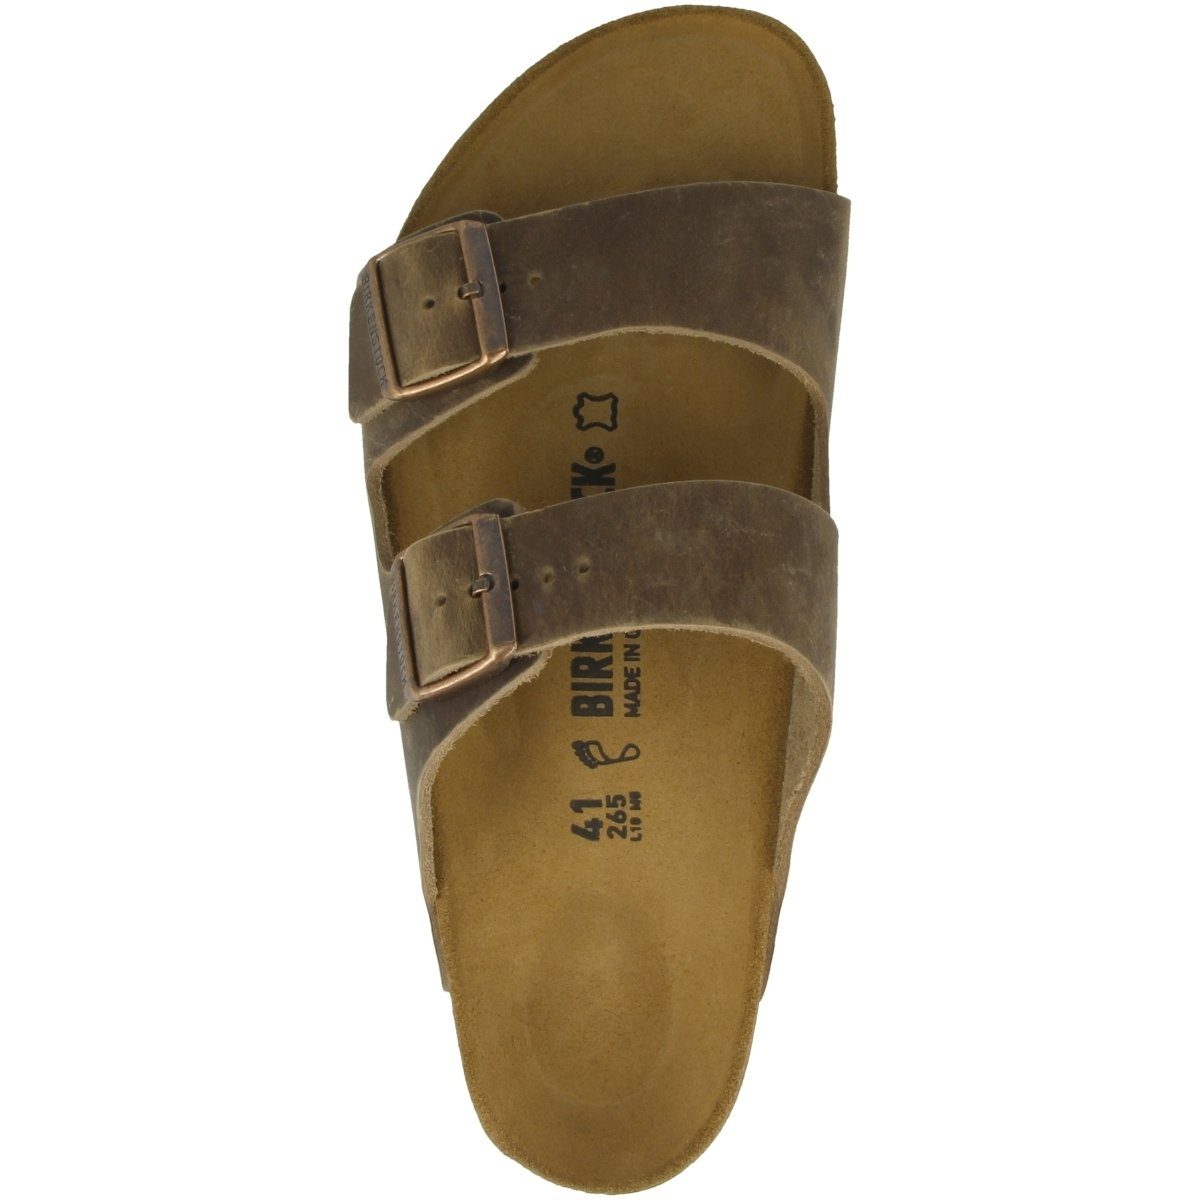 Birkenstock Nubukleder Erwachsene schmal Sandale braun Arizona Unisex